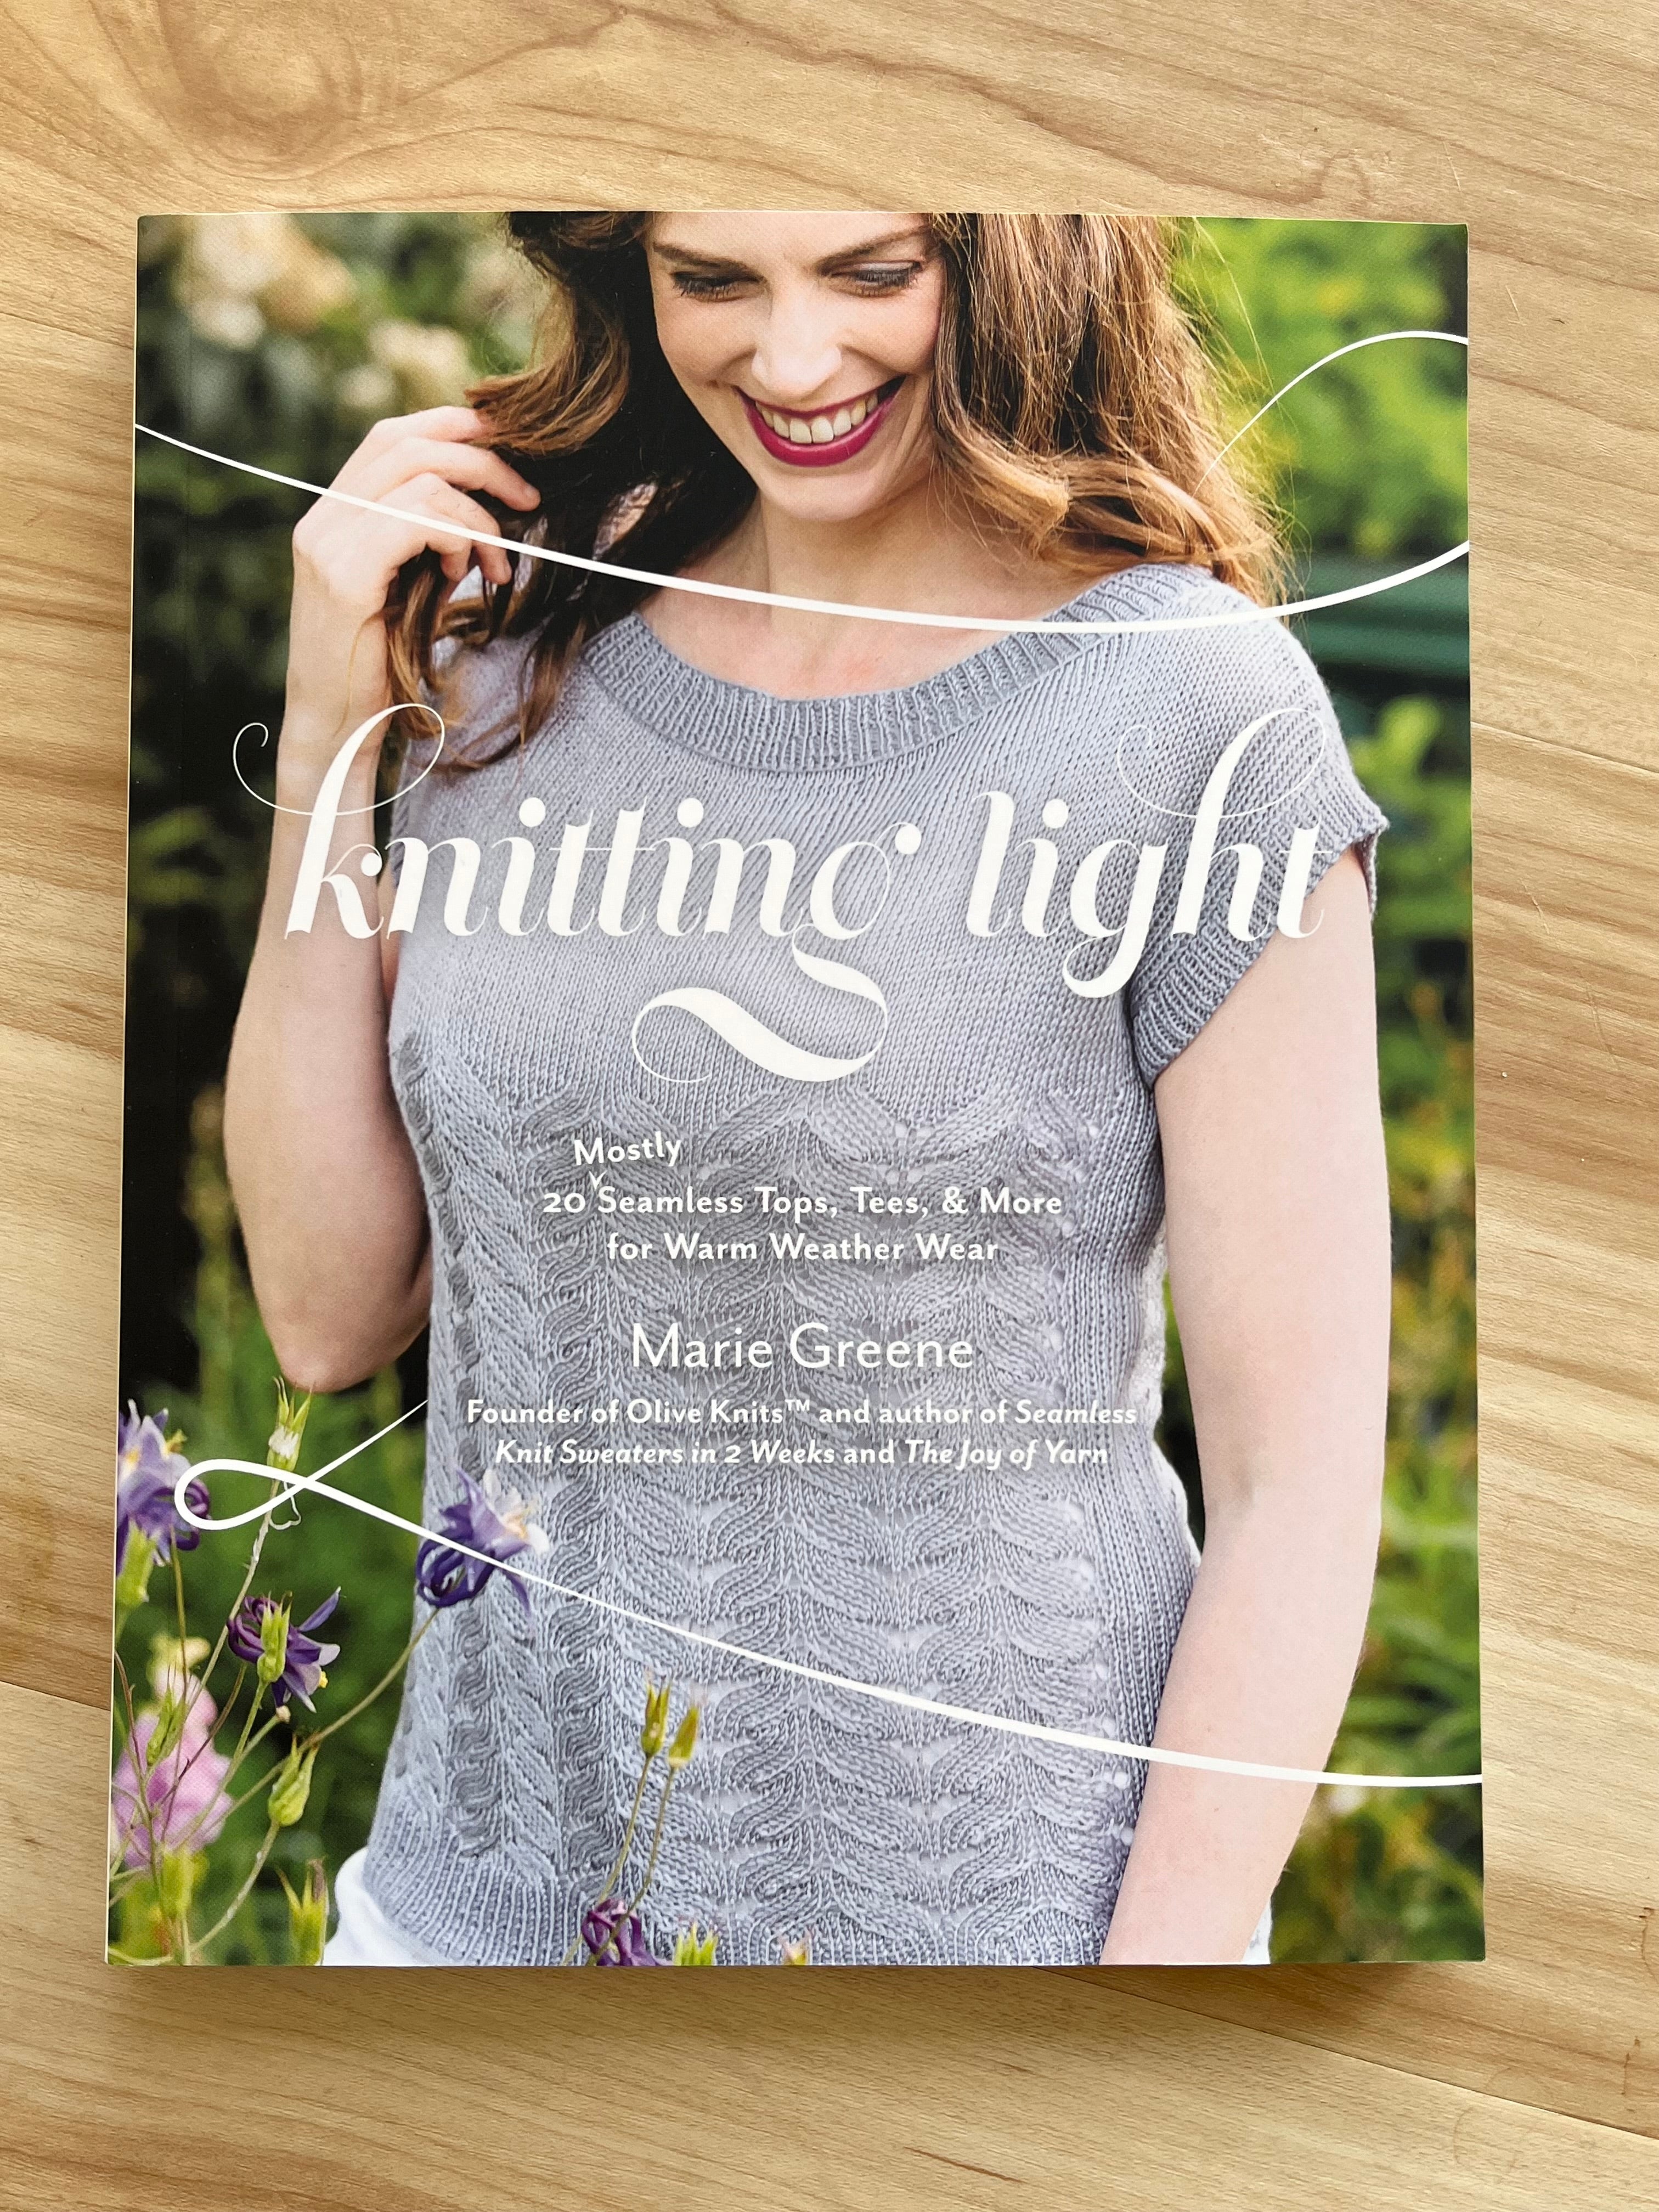 Knitting Light book from Marie Greene